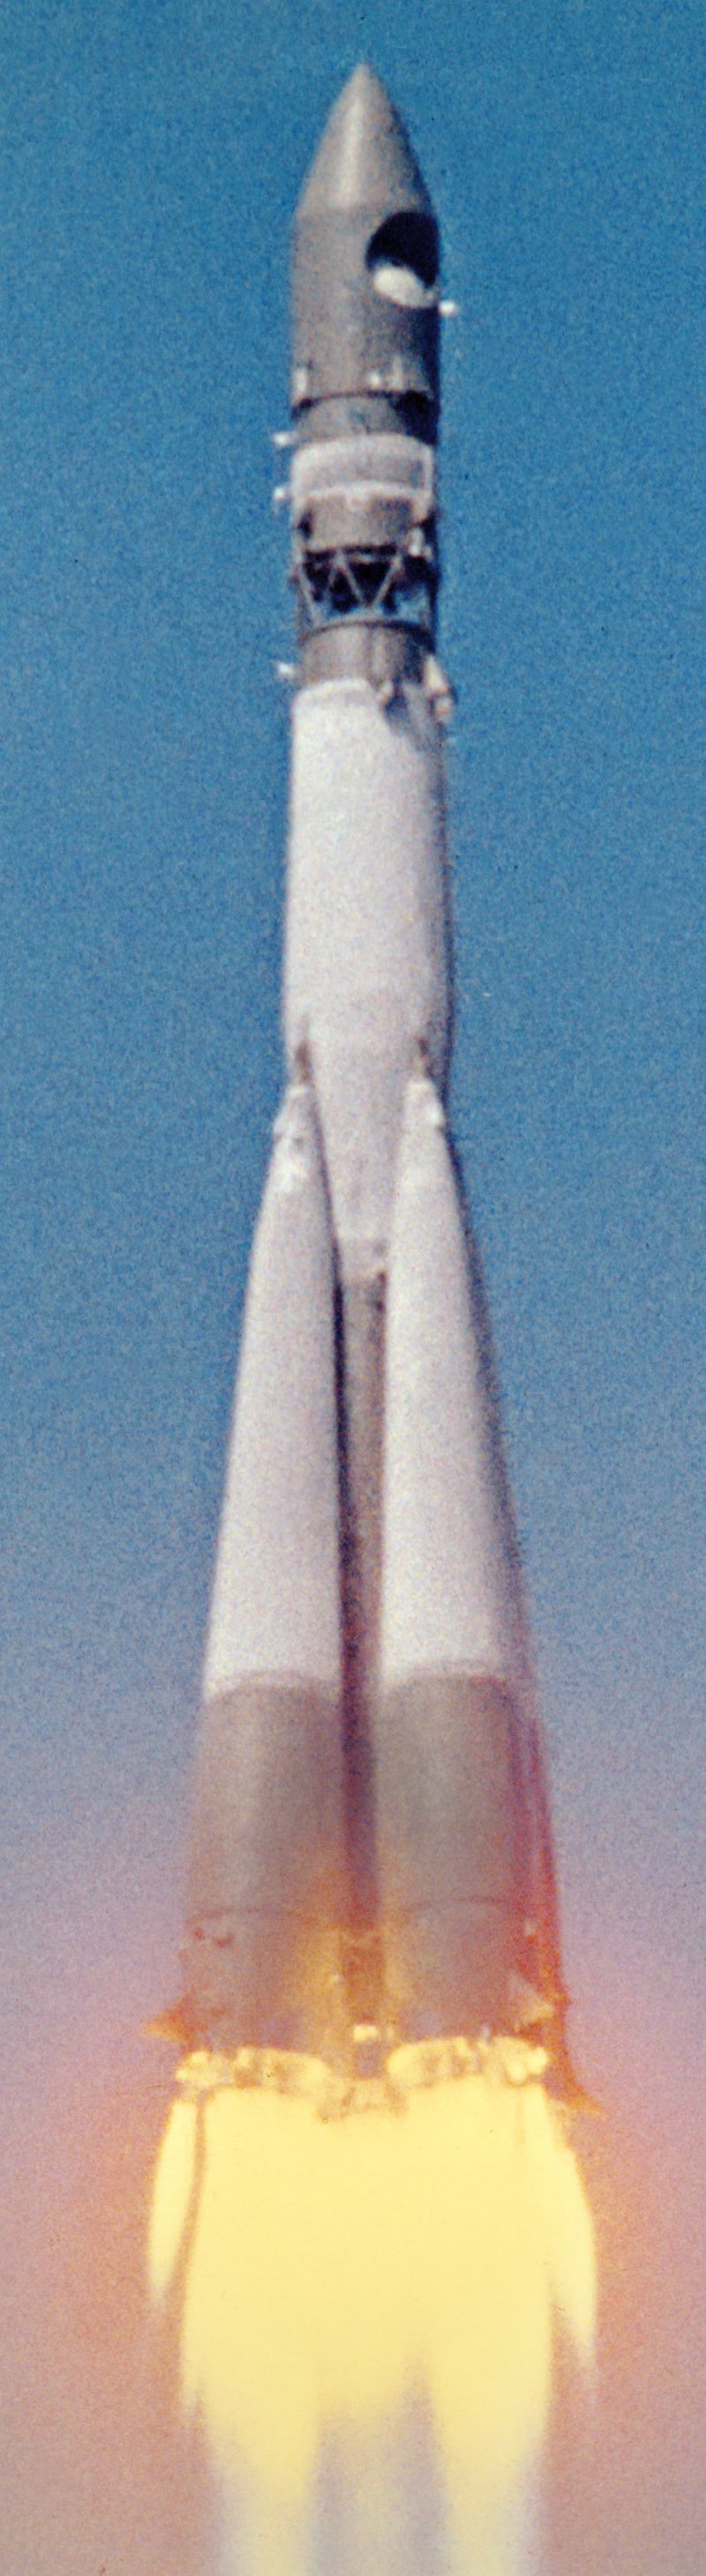 Первая советская ракета в космосе. Ракета Юрия Гагарина Восток-1. Восток 1 Гагарин 1961. Байконур Восток 1 1961. Космический корабль Восток 1 Юрия Гагарина.